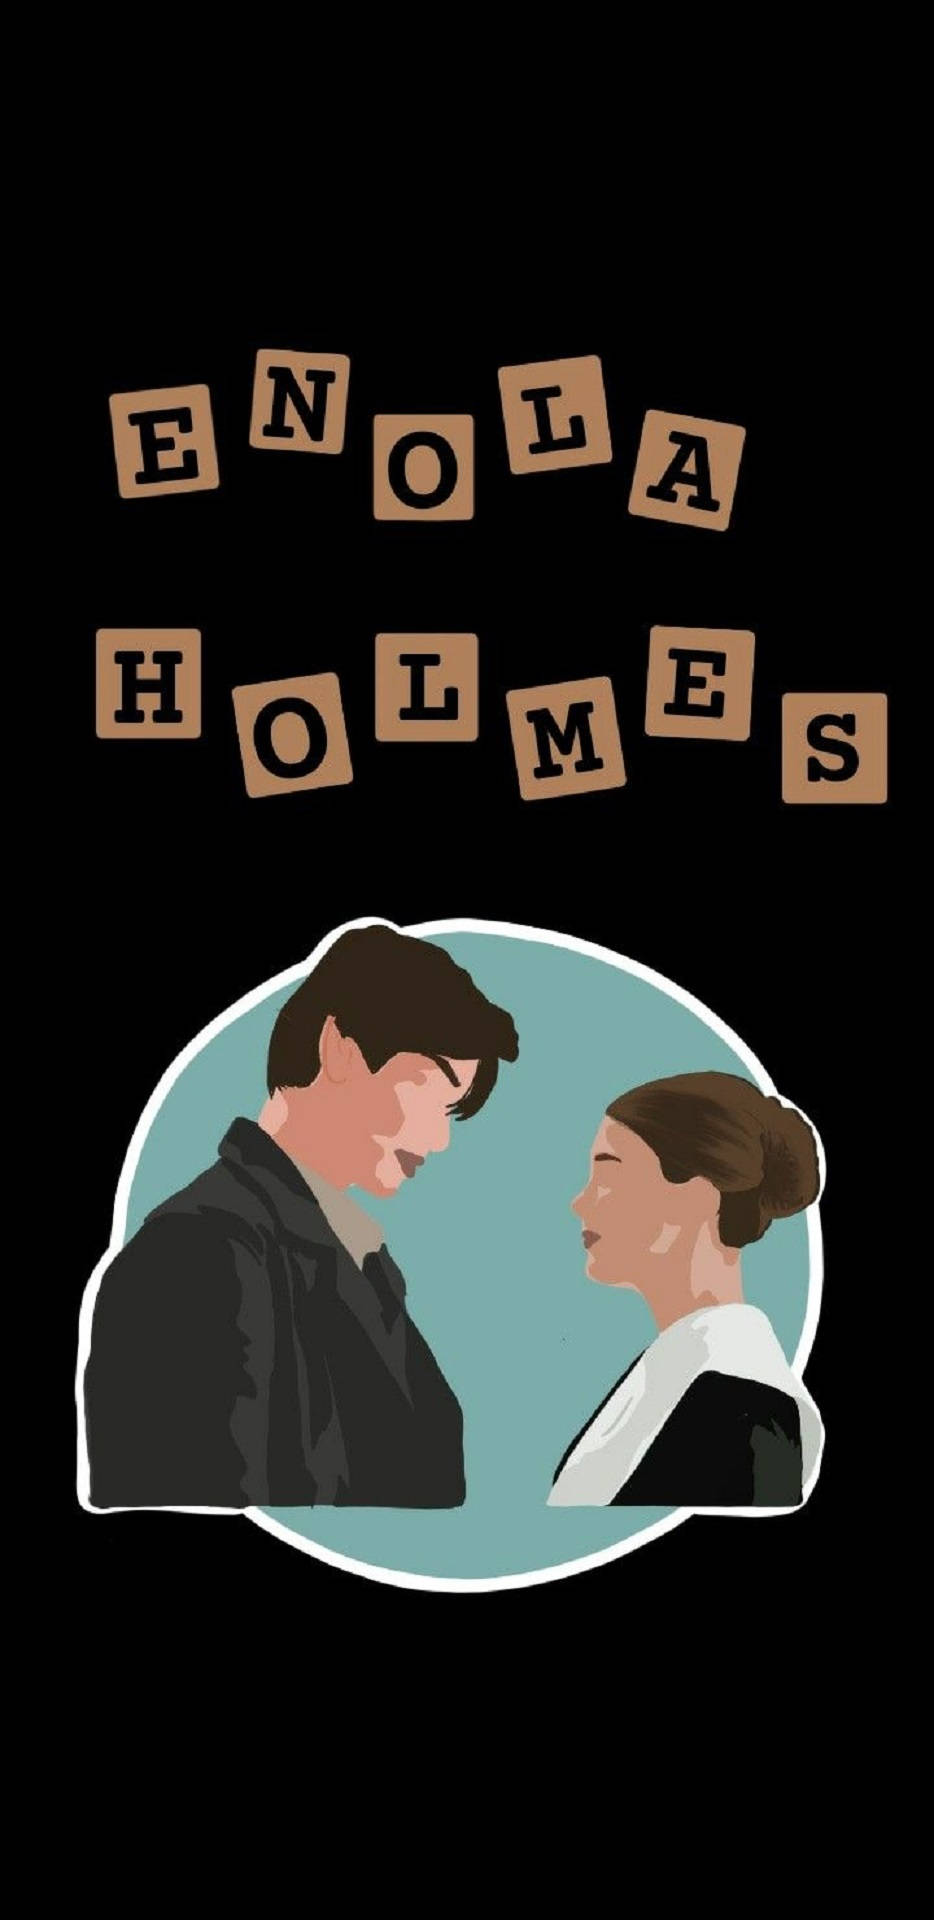 Enola Holmes Fan Art Stickers Wallpaper